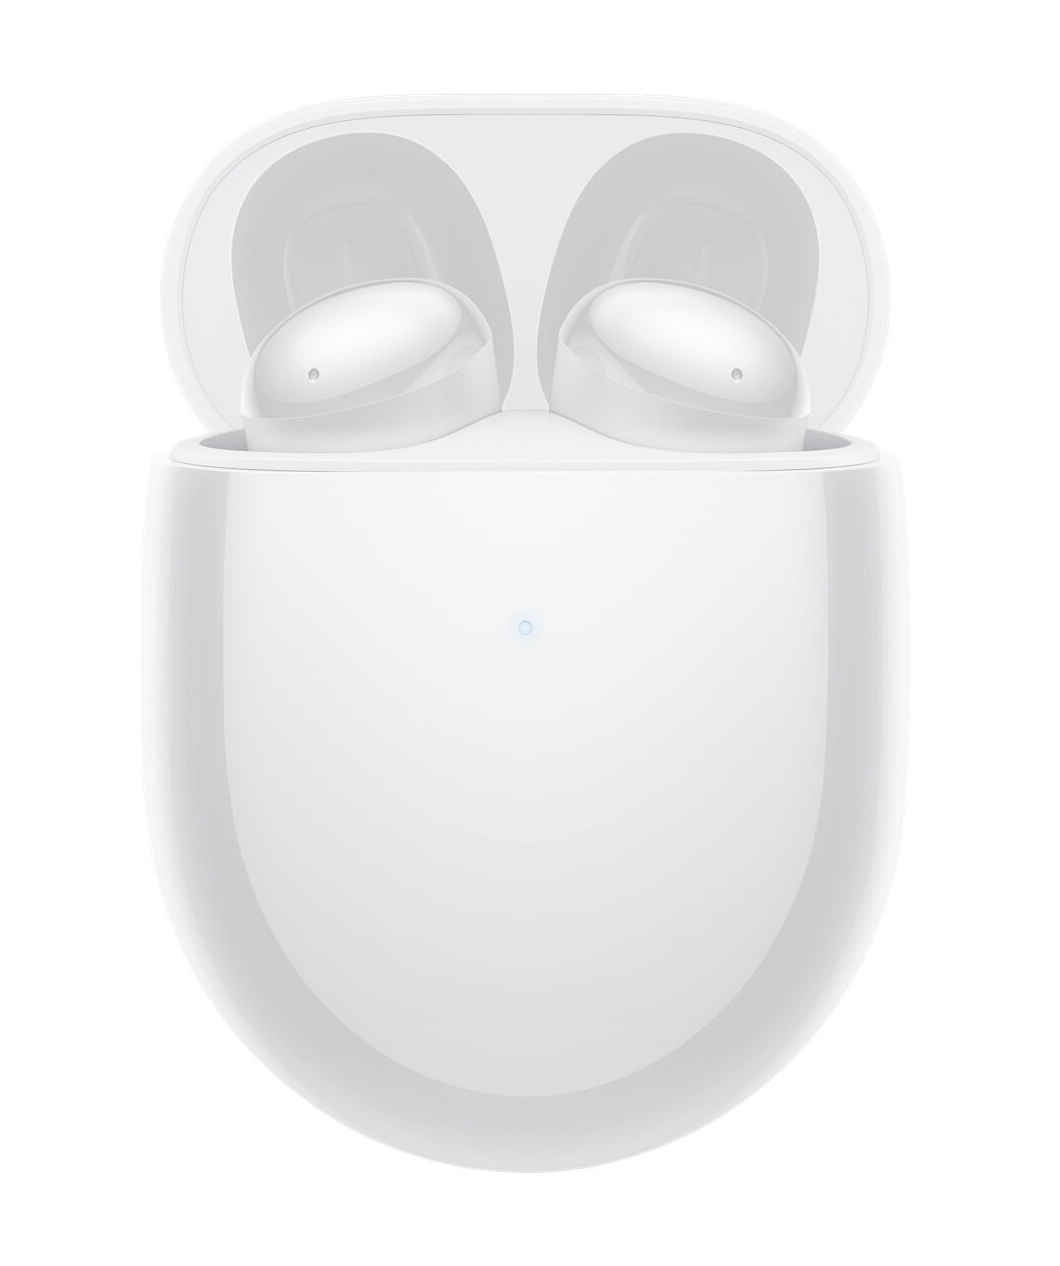 Անլար ականջակալներ «Xiaomi Redmi» 4, սպիտակ